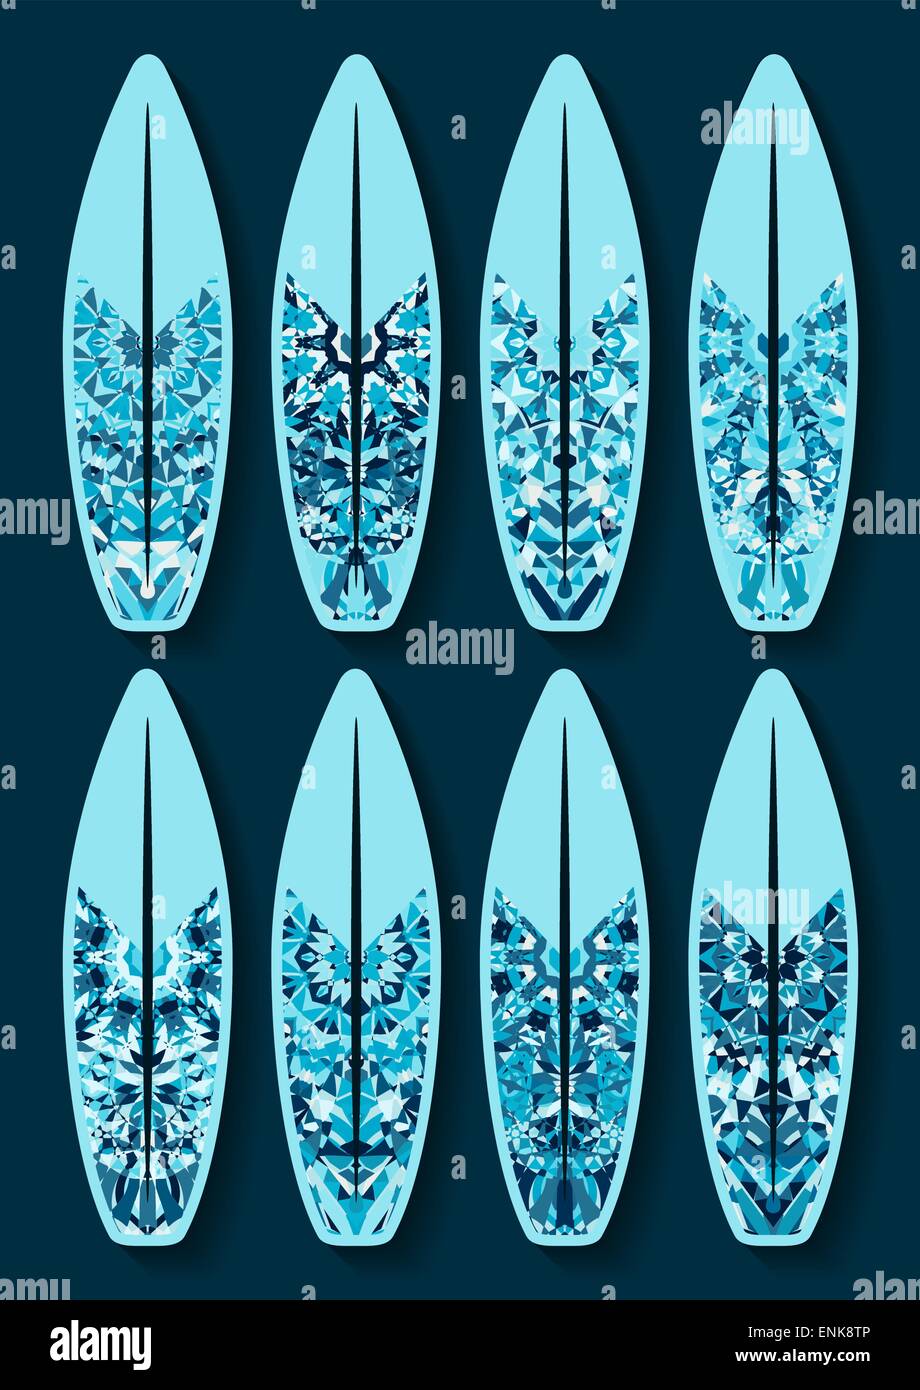 Surfbretter set mit blauer Kaleidoskop Muster - Vektor-Illustration. EPS 8 Stock Vektor